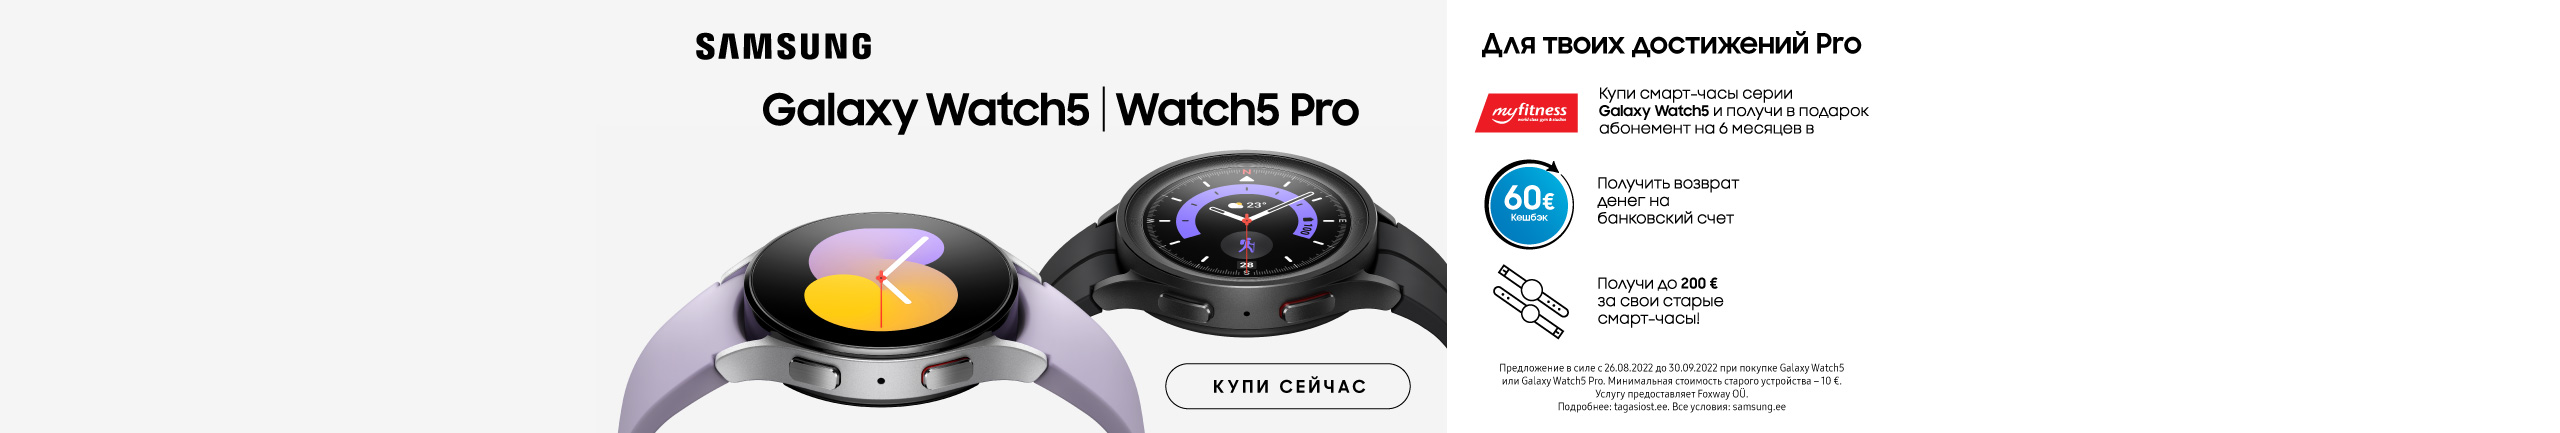 Купите Samsung Galaxy Watch5 Pro и получите подарки!